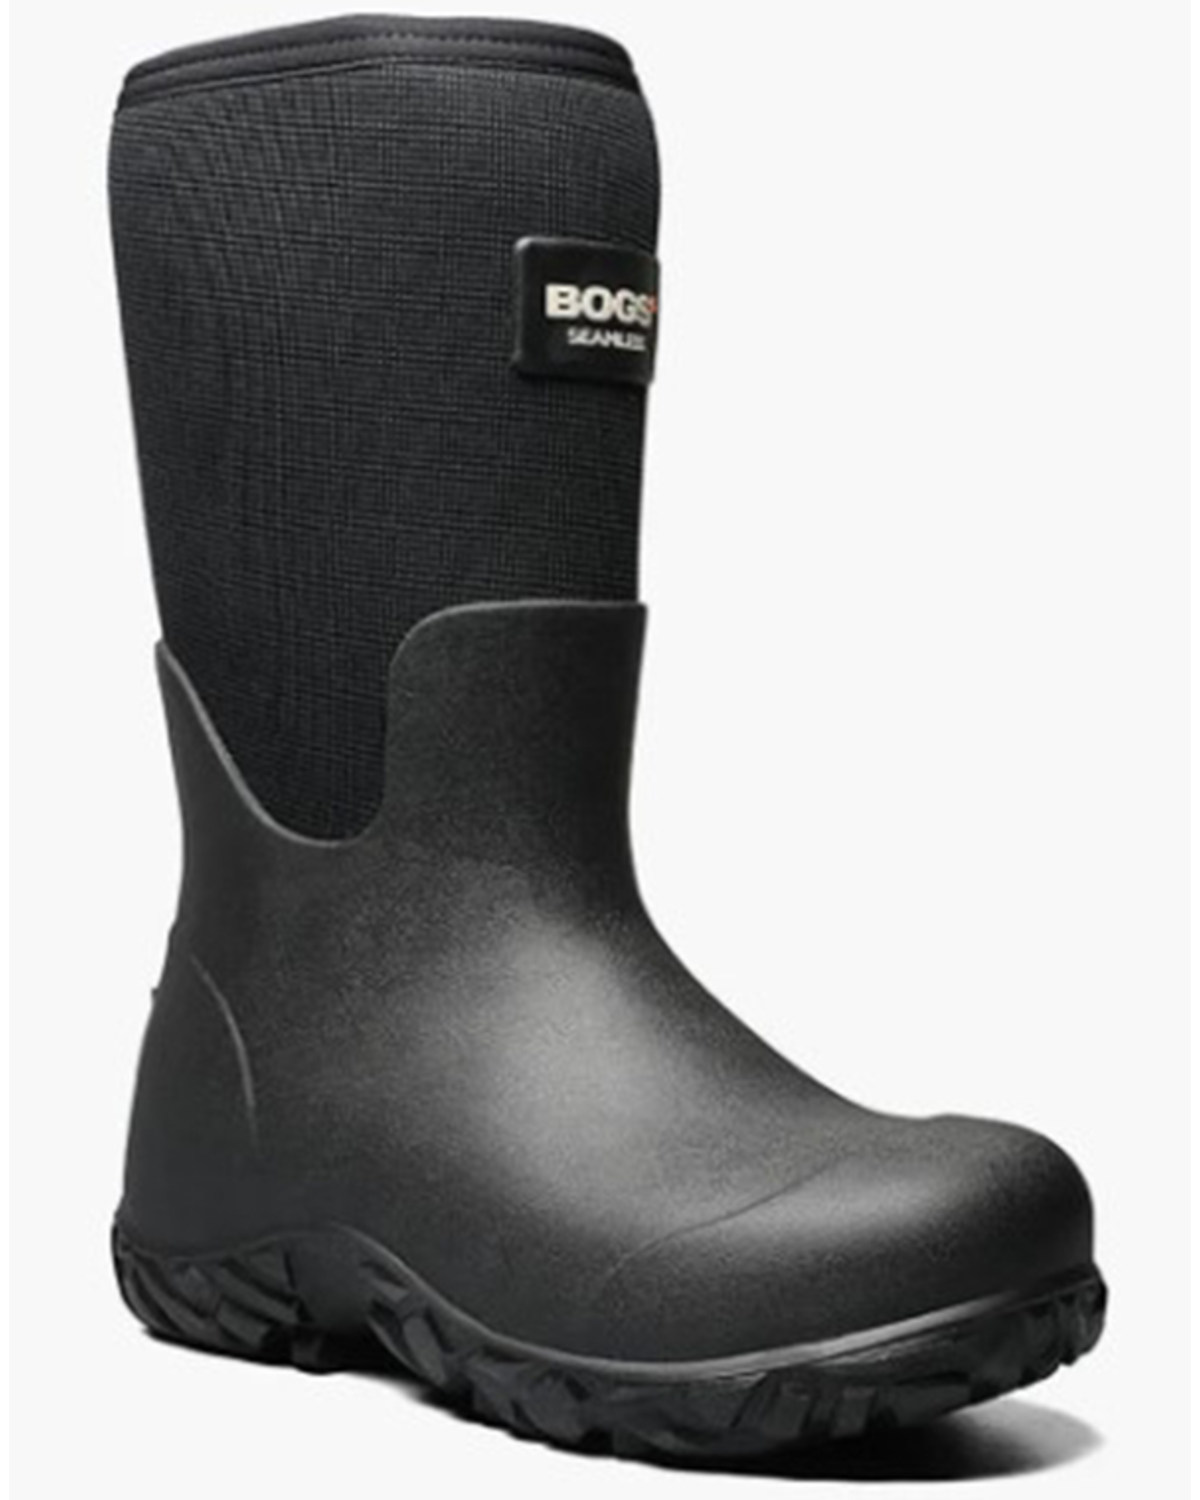 Bogs Men's Workman Waterproof Work Boots - Composite Toe